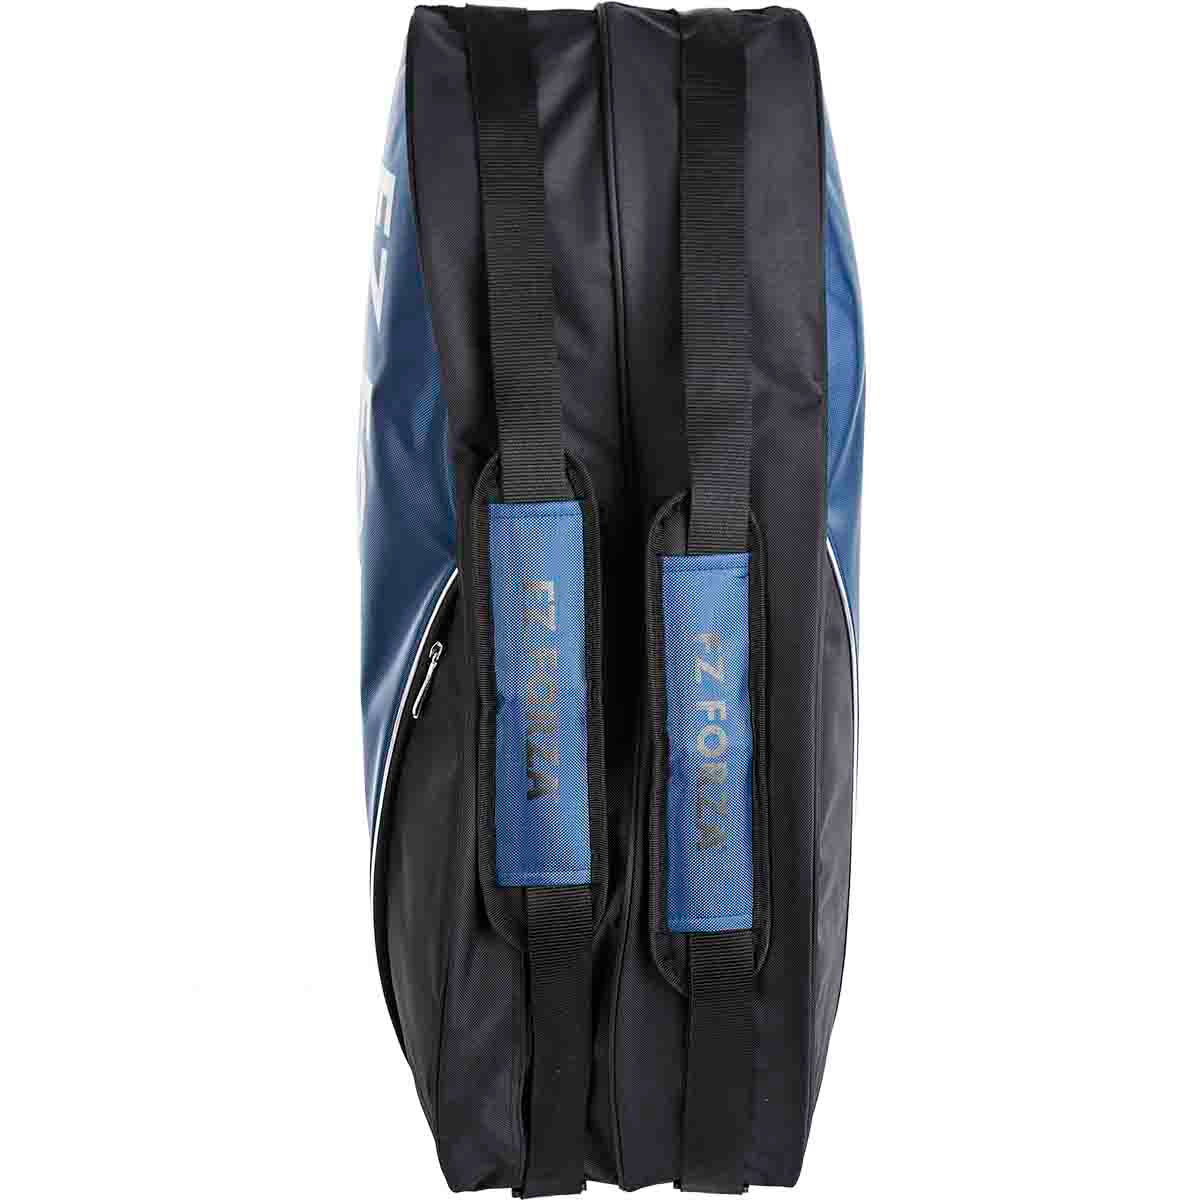 Ark 6 Racket Bag (Estate Blue)